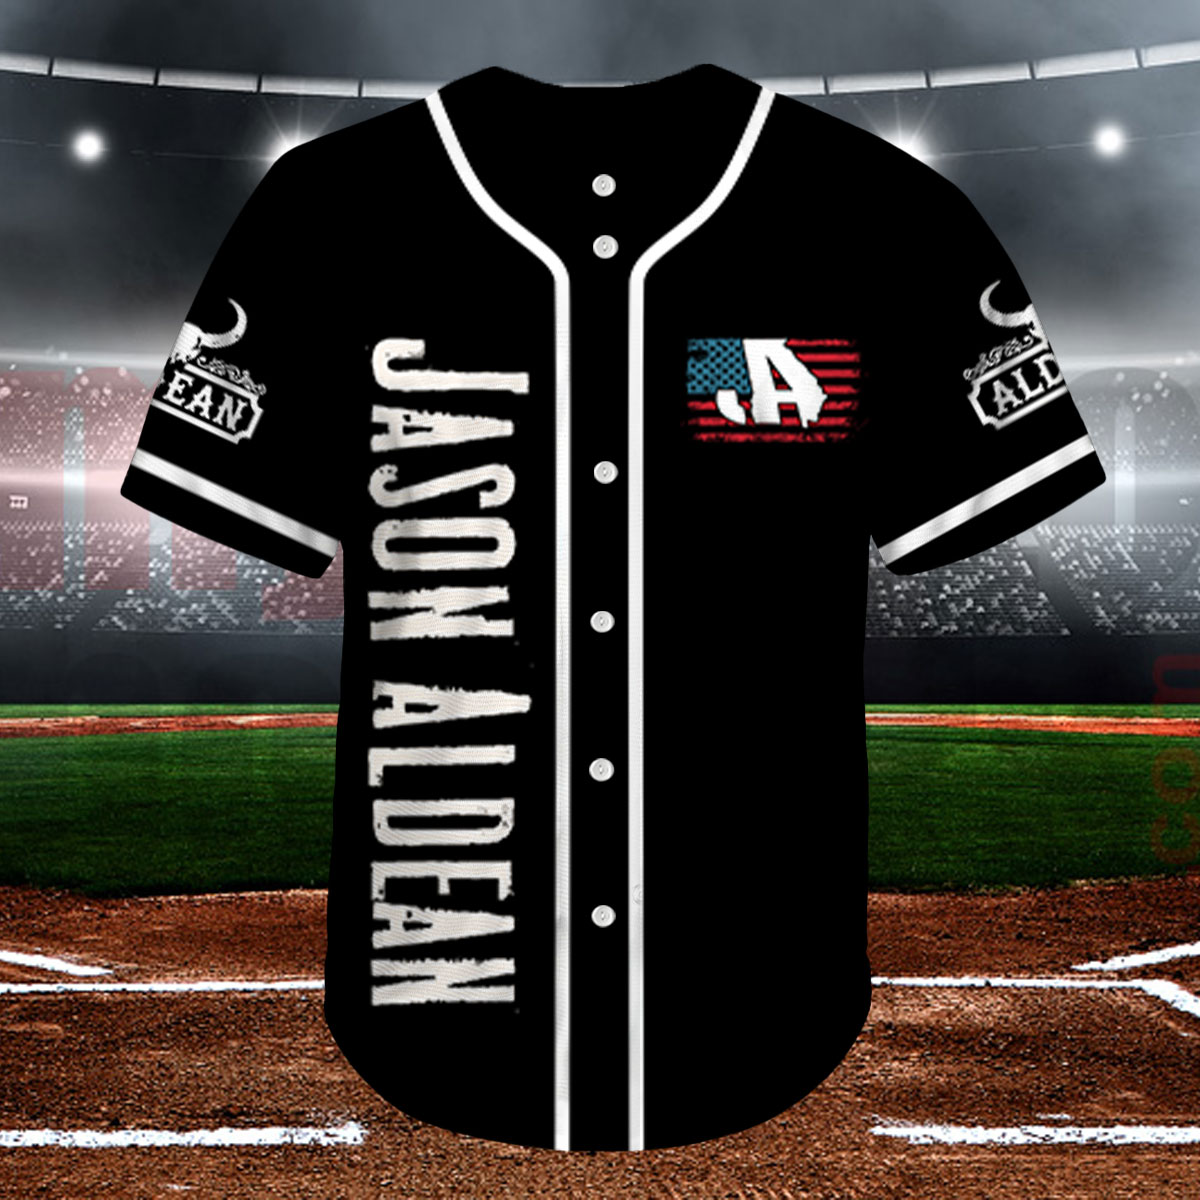 Baseball Uniforms Orlando, FL, Orlando, FL Custom Uniform Designers  Printers